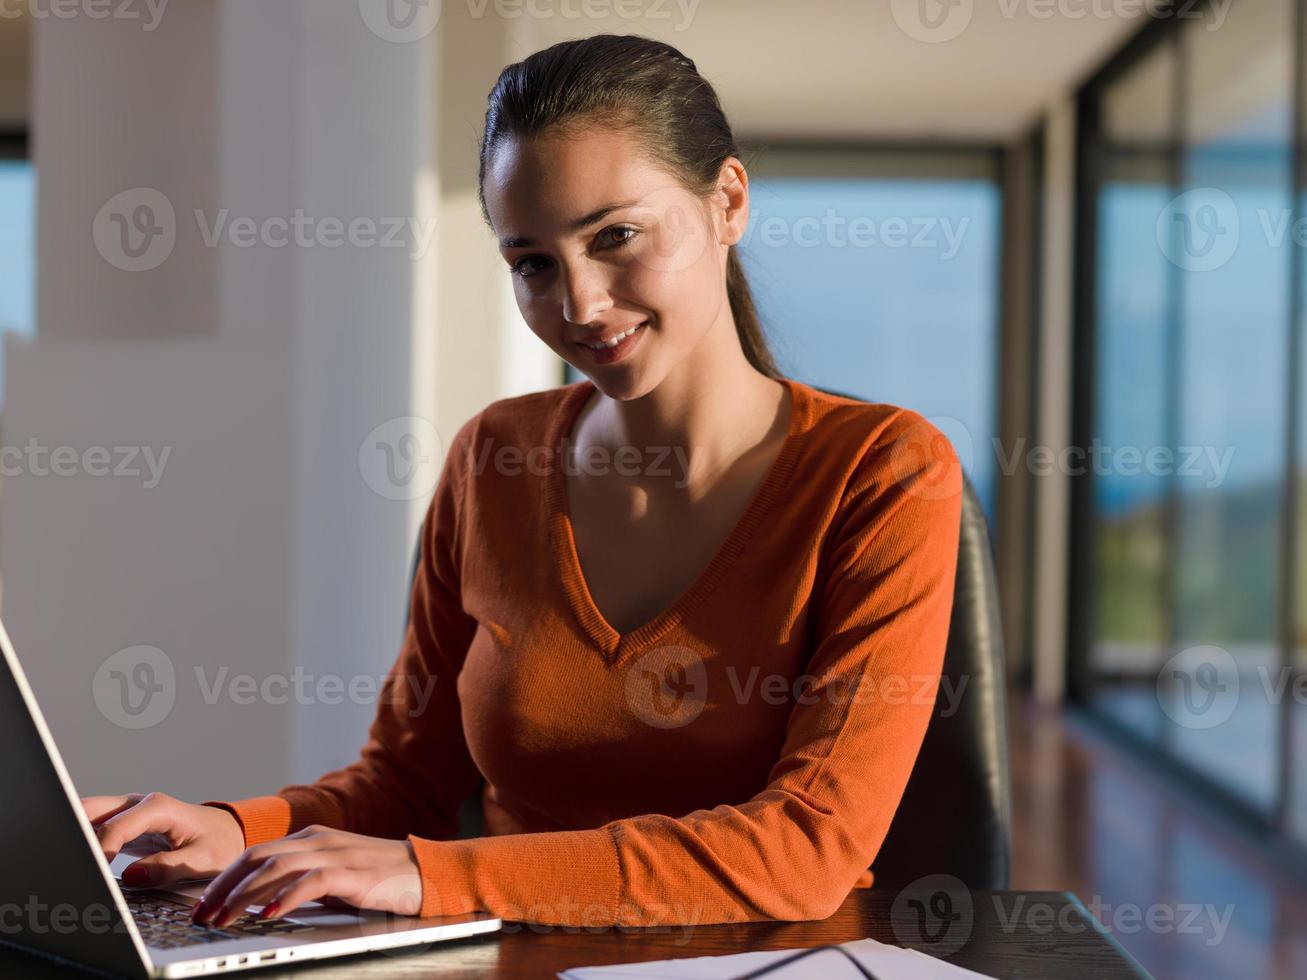 jovem relaxada em casa trabalhando no computador portátil foto